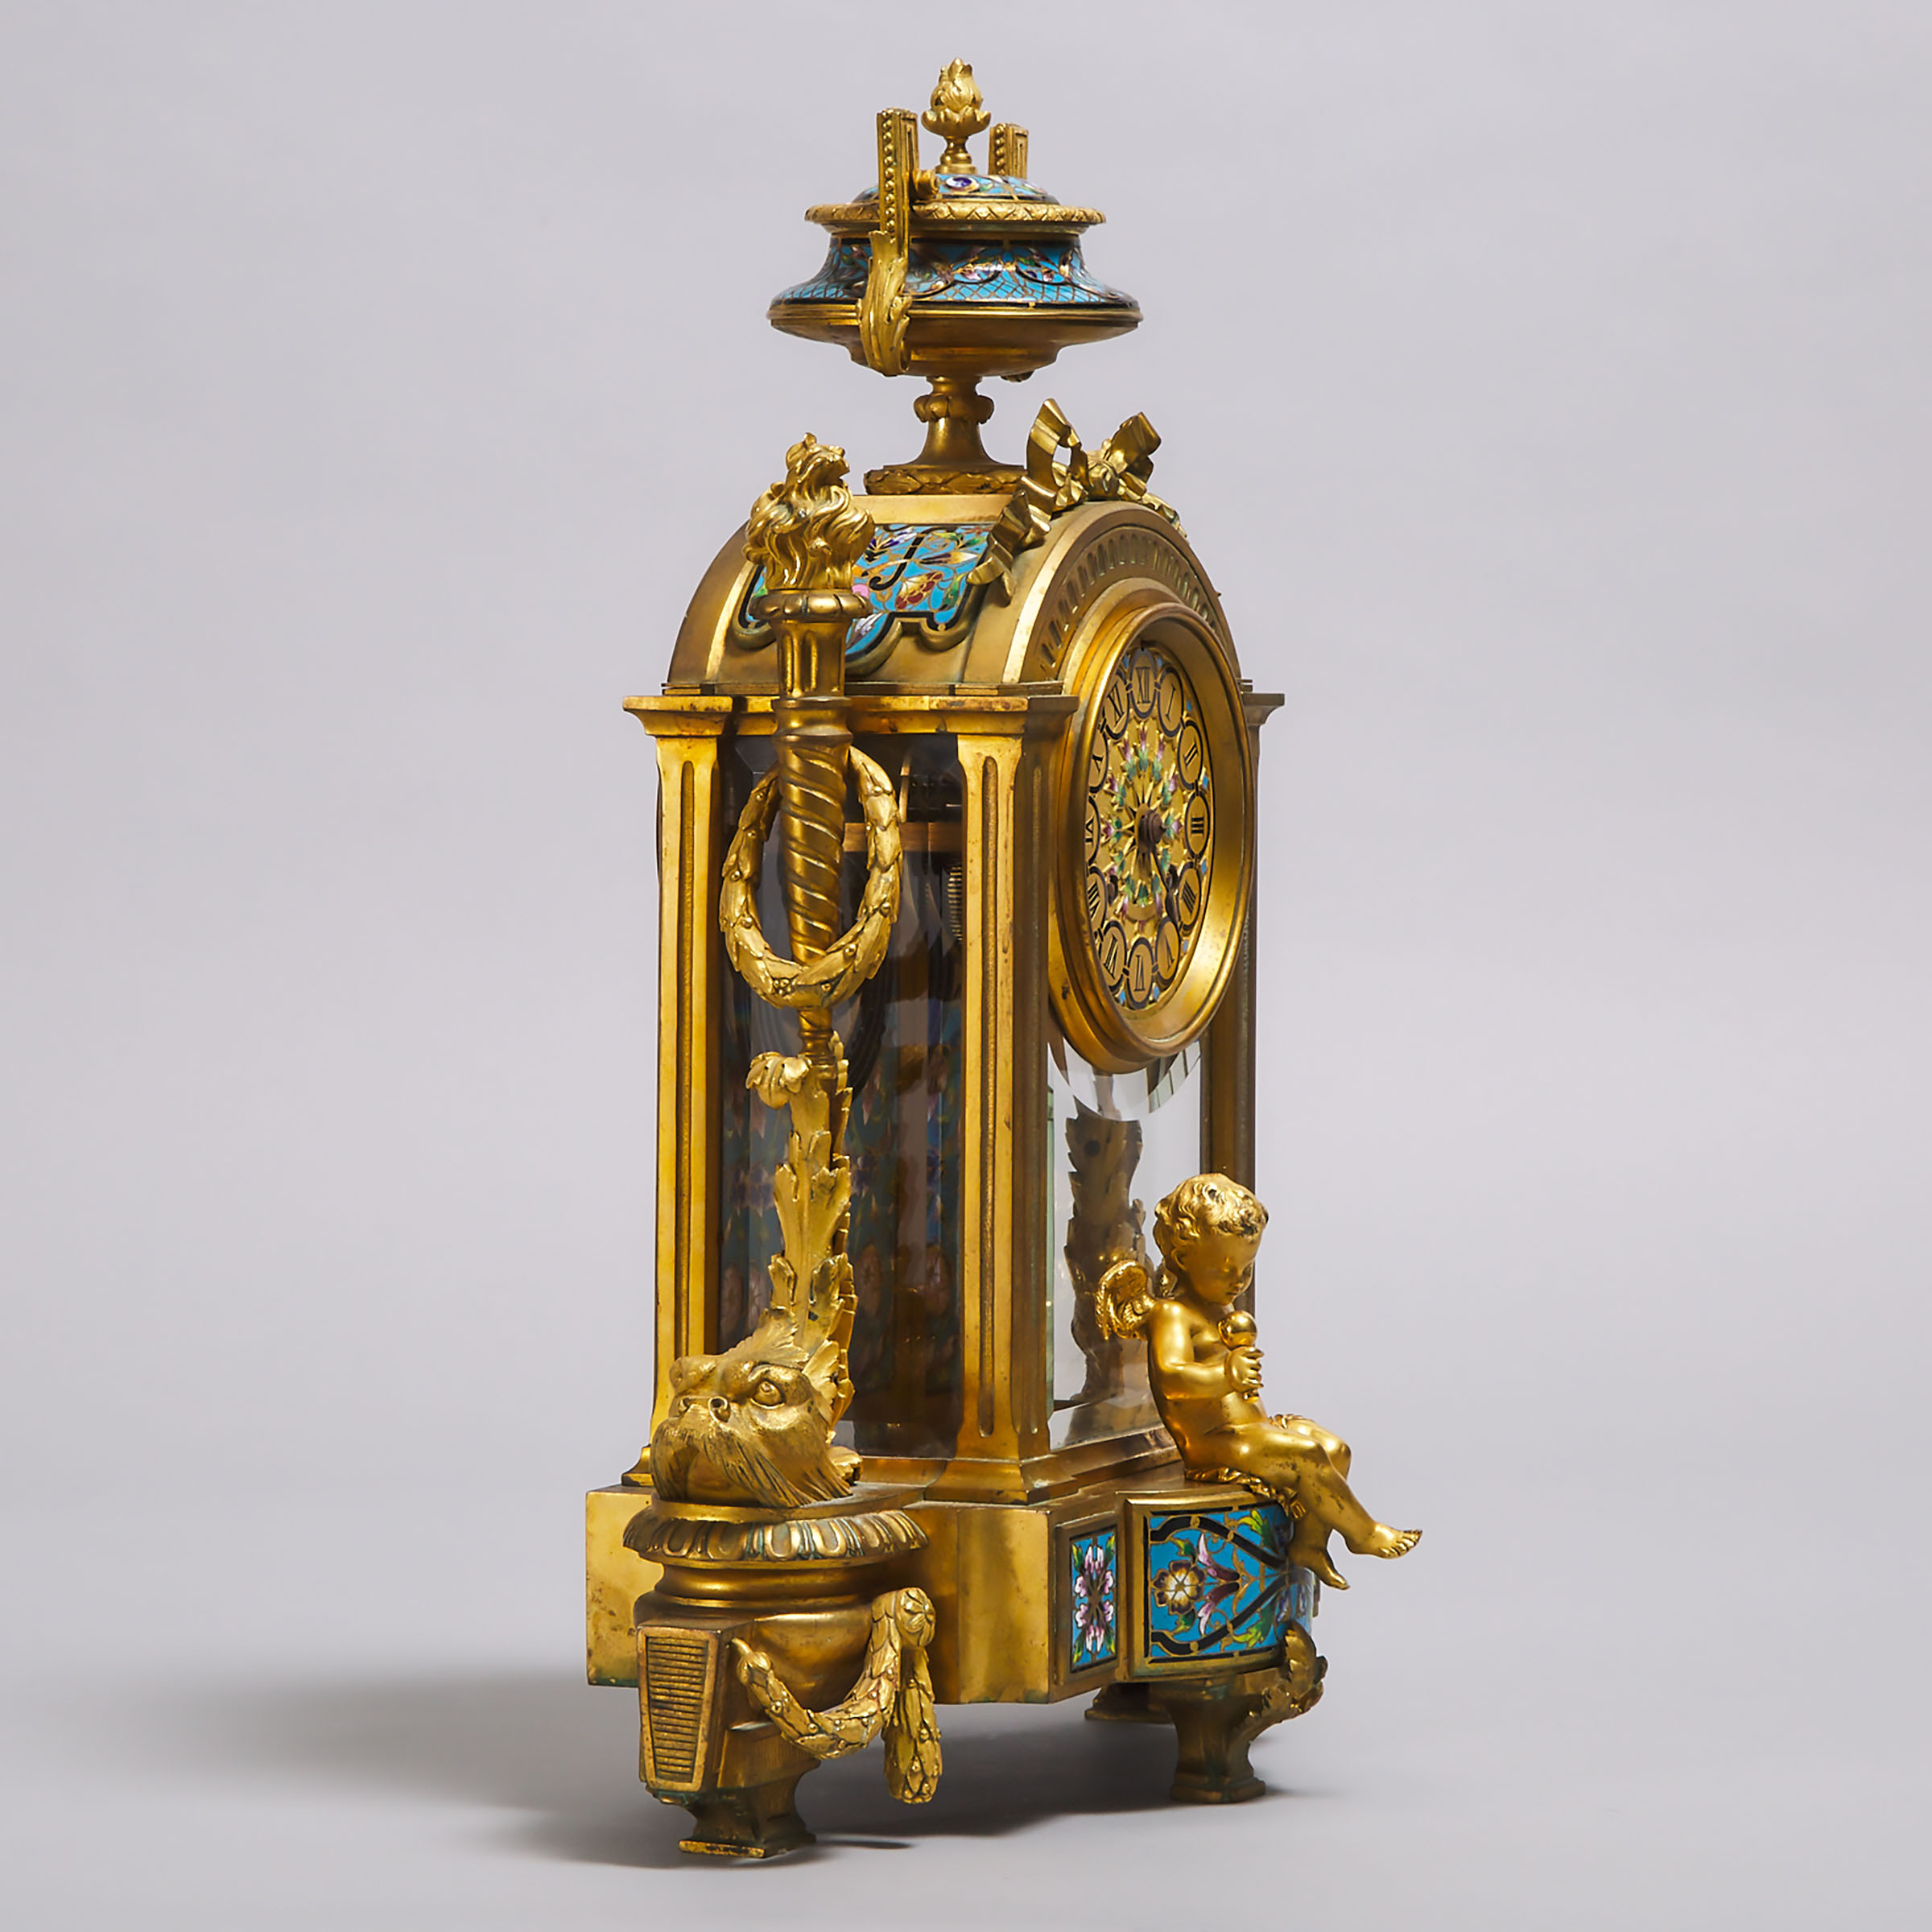 French Champlevé Enamelled GIlt Bronze Mantle Clock, Leroy & Fils, Paris, c.1870